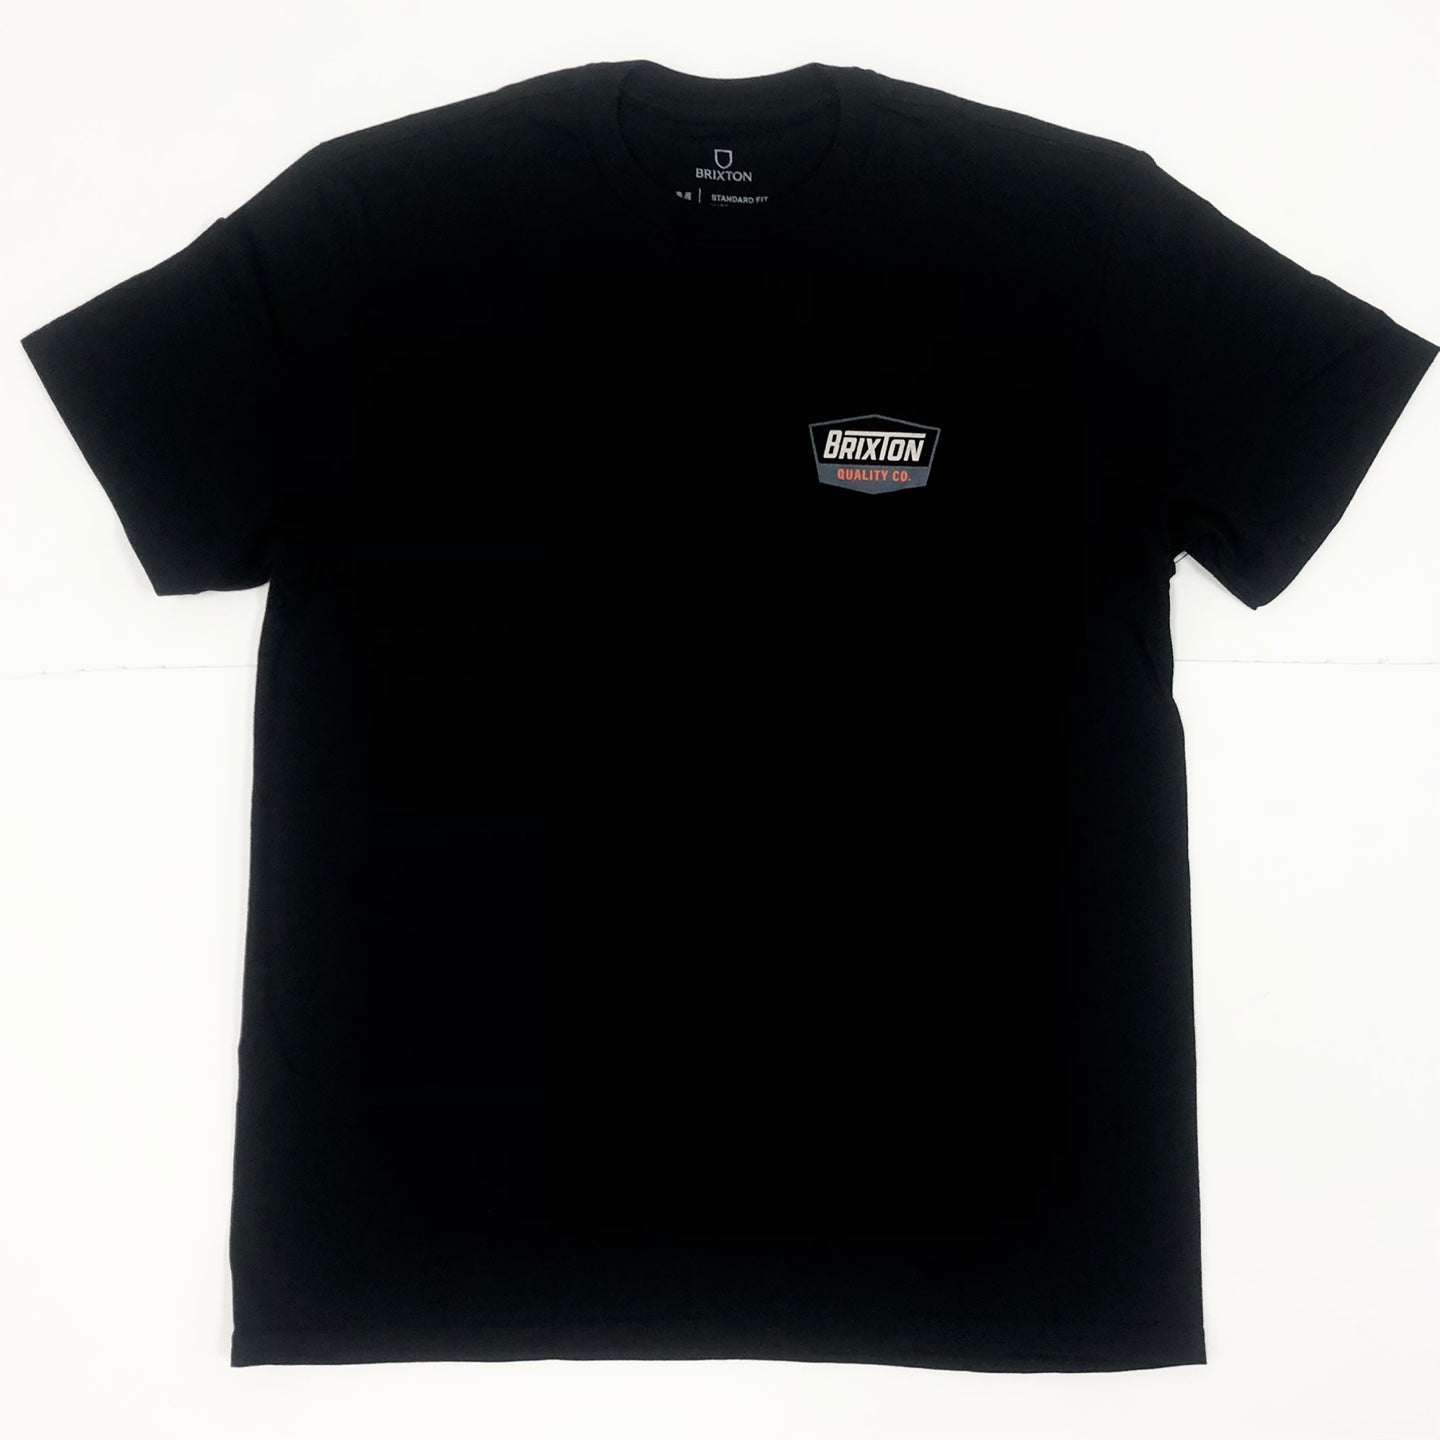 BRIXTON Regal S/S Standard T-Shirt - Black